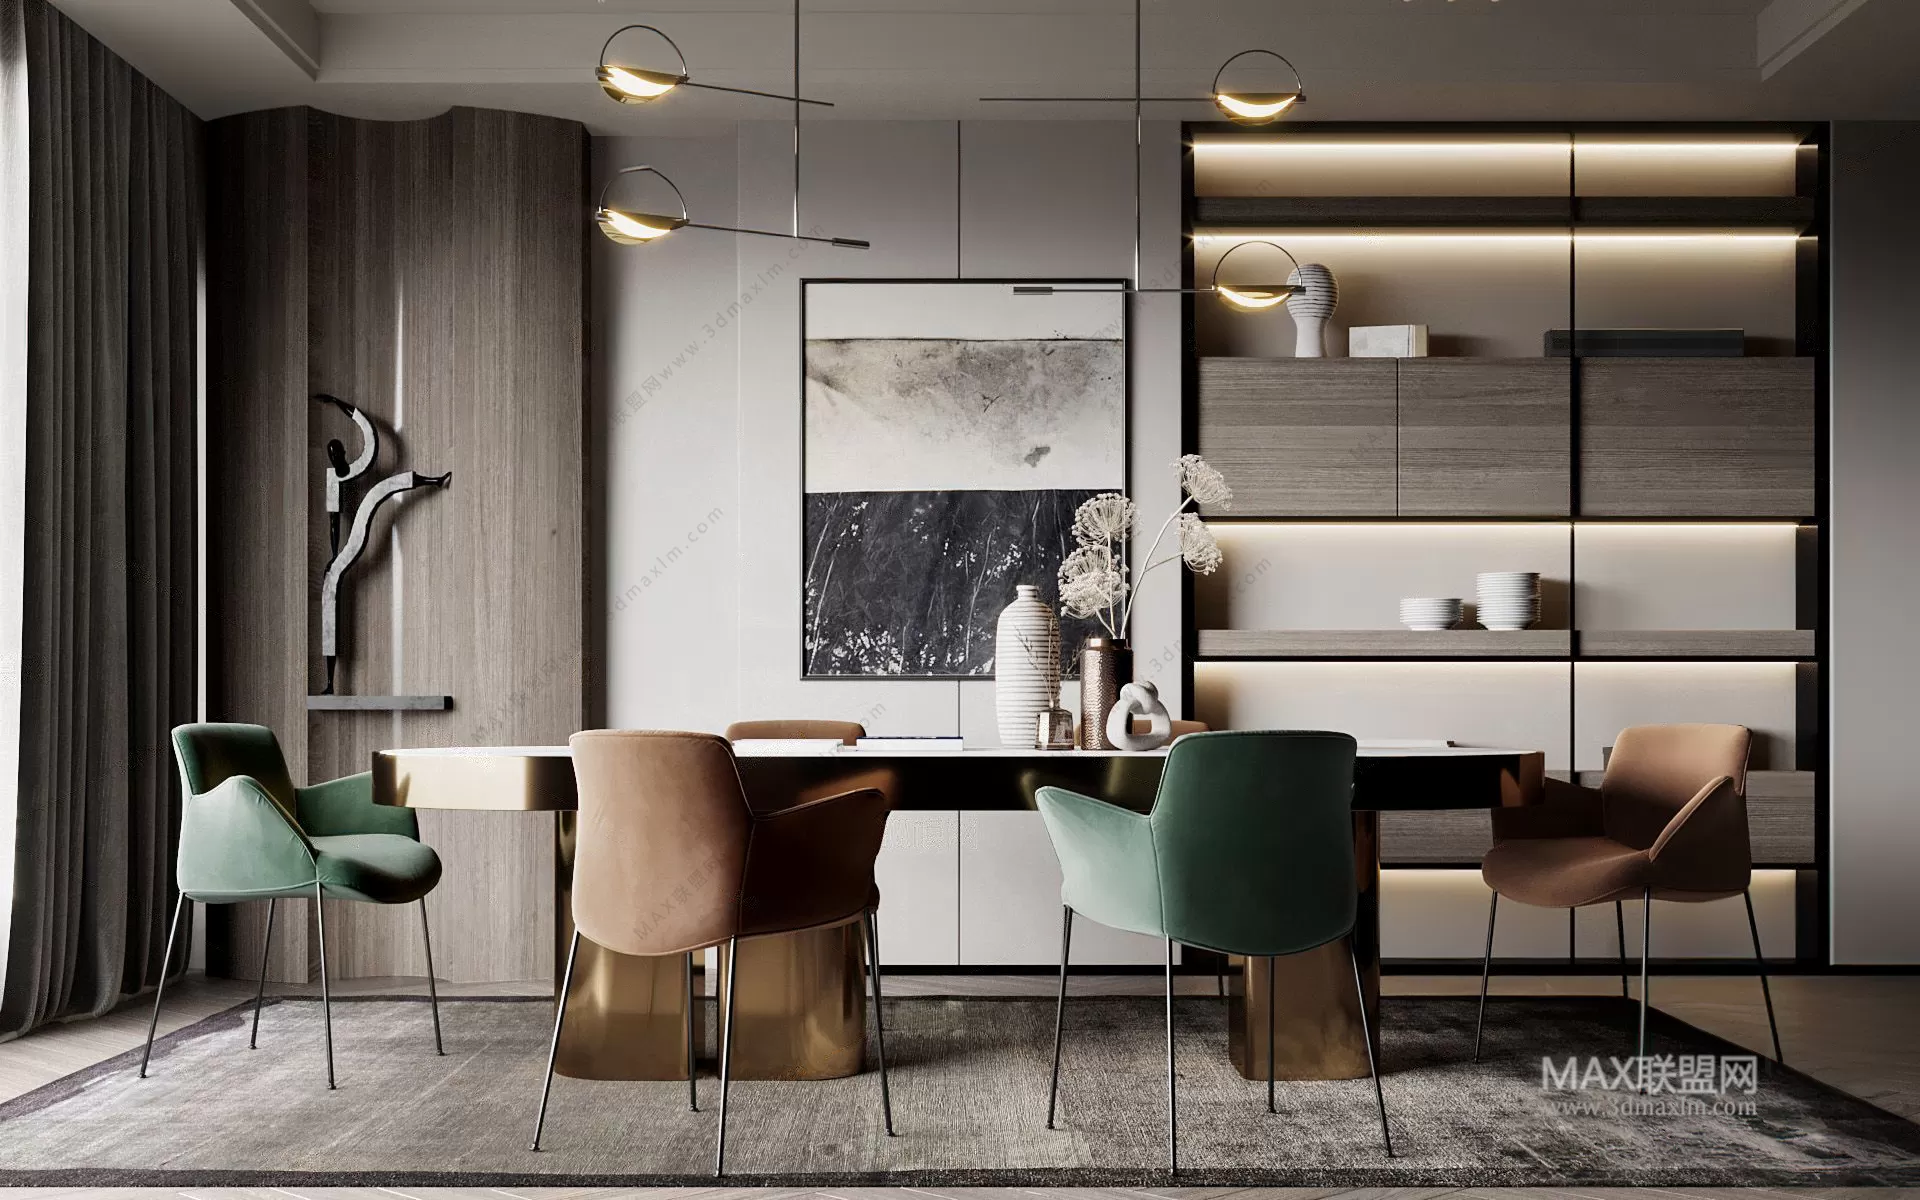 [3DSKY] Dining Room - Interior Design - Modern Design - 024 | NEW ...